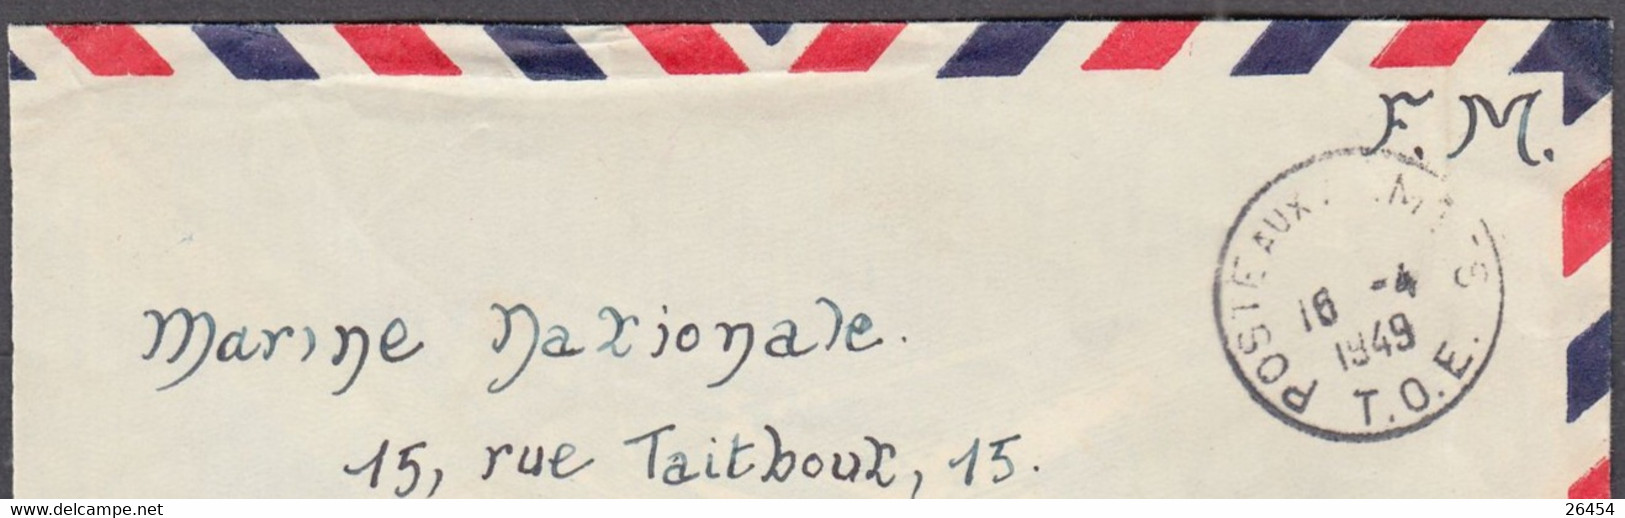 Enveloppe Avec Cachet   POSTE AUX ARMEES  T.O.E. Le 16 4 1949 Pour La MARINE NATIONALE à PARIS  En F.M. - Guerra De Indochina/Vietnam